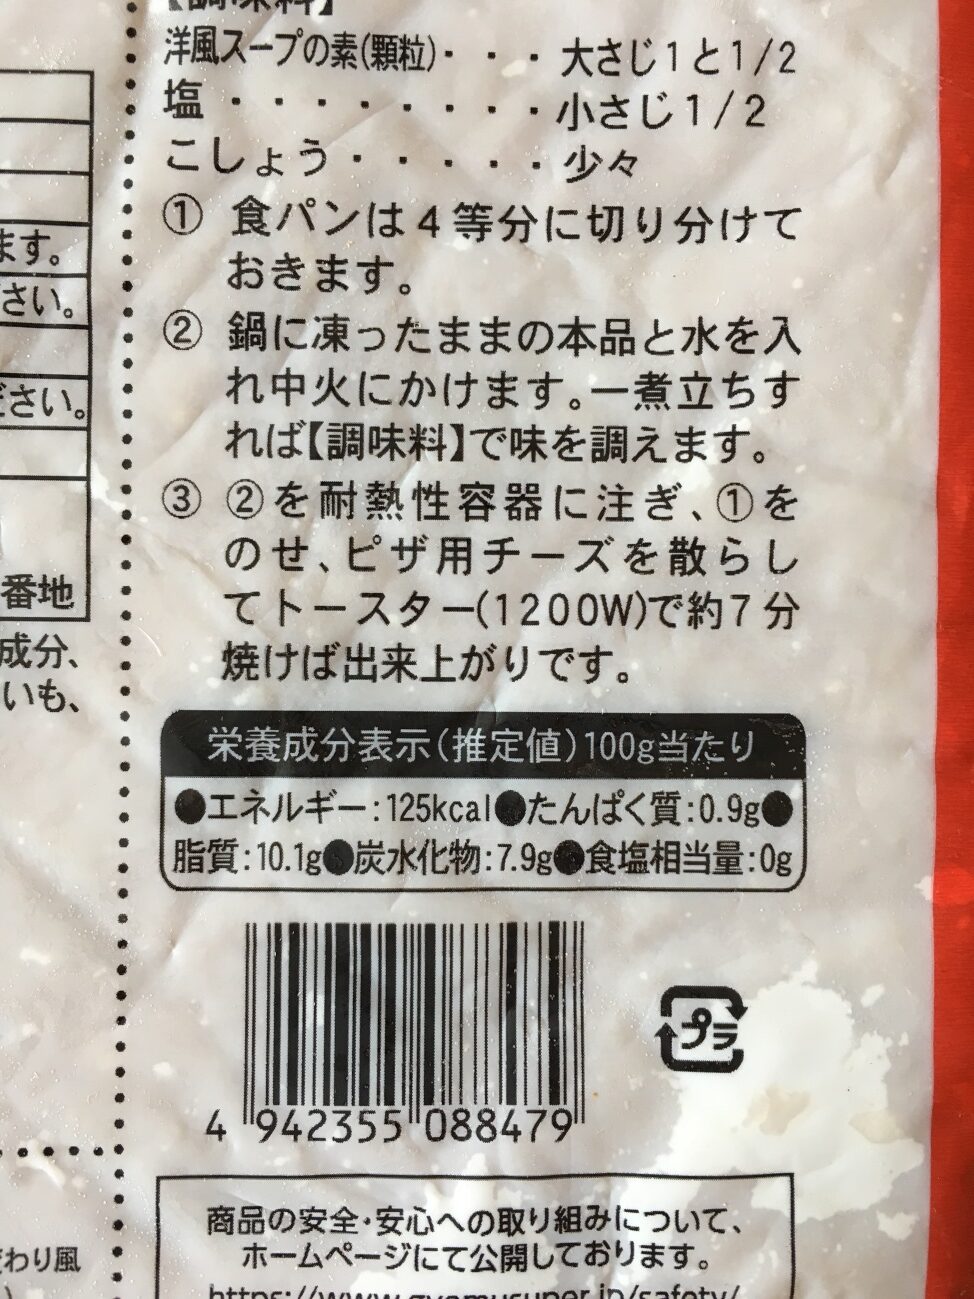 業務スーパーのオニオンソテーの栄養成分表示